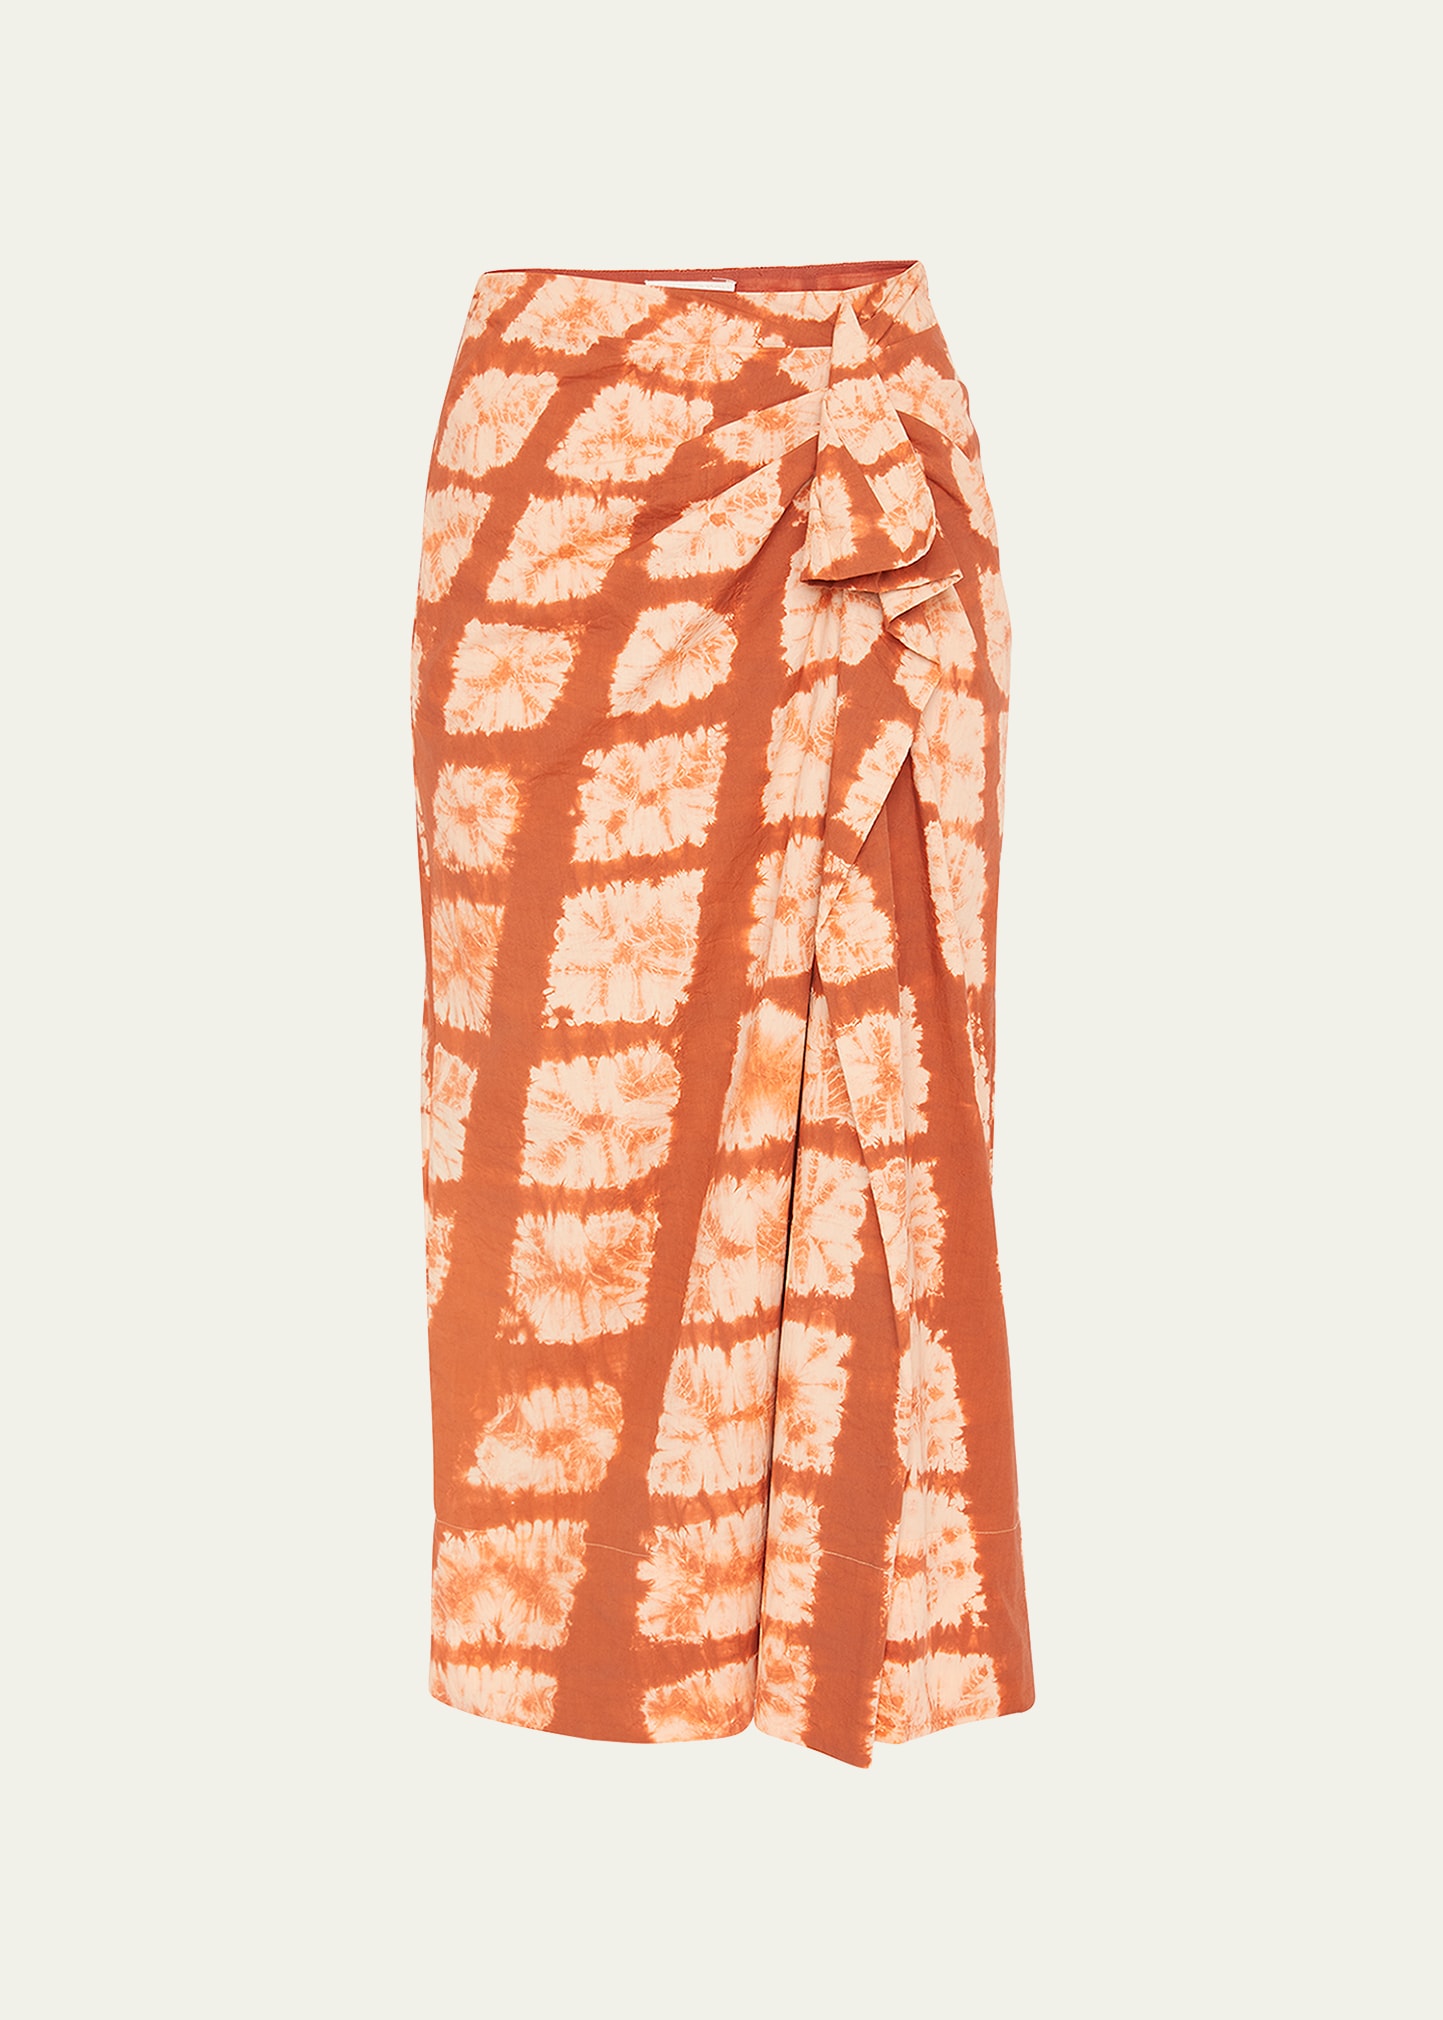 Ember Hand Dyed Diamond Shibori Ruffle Midi Skirt